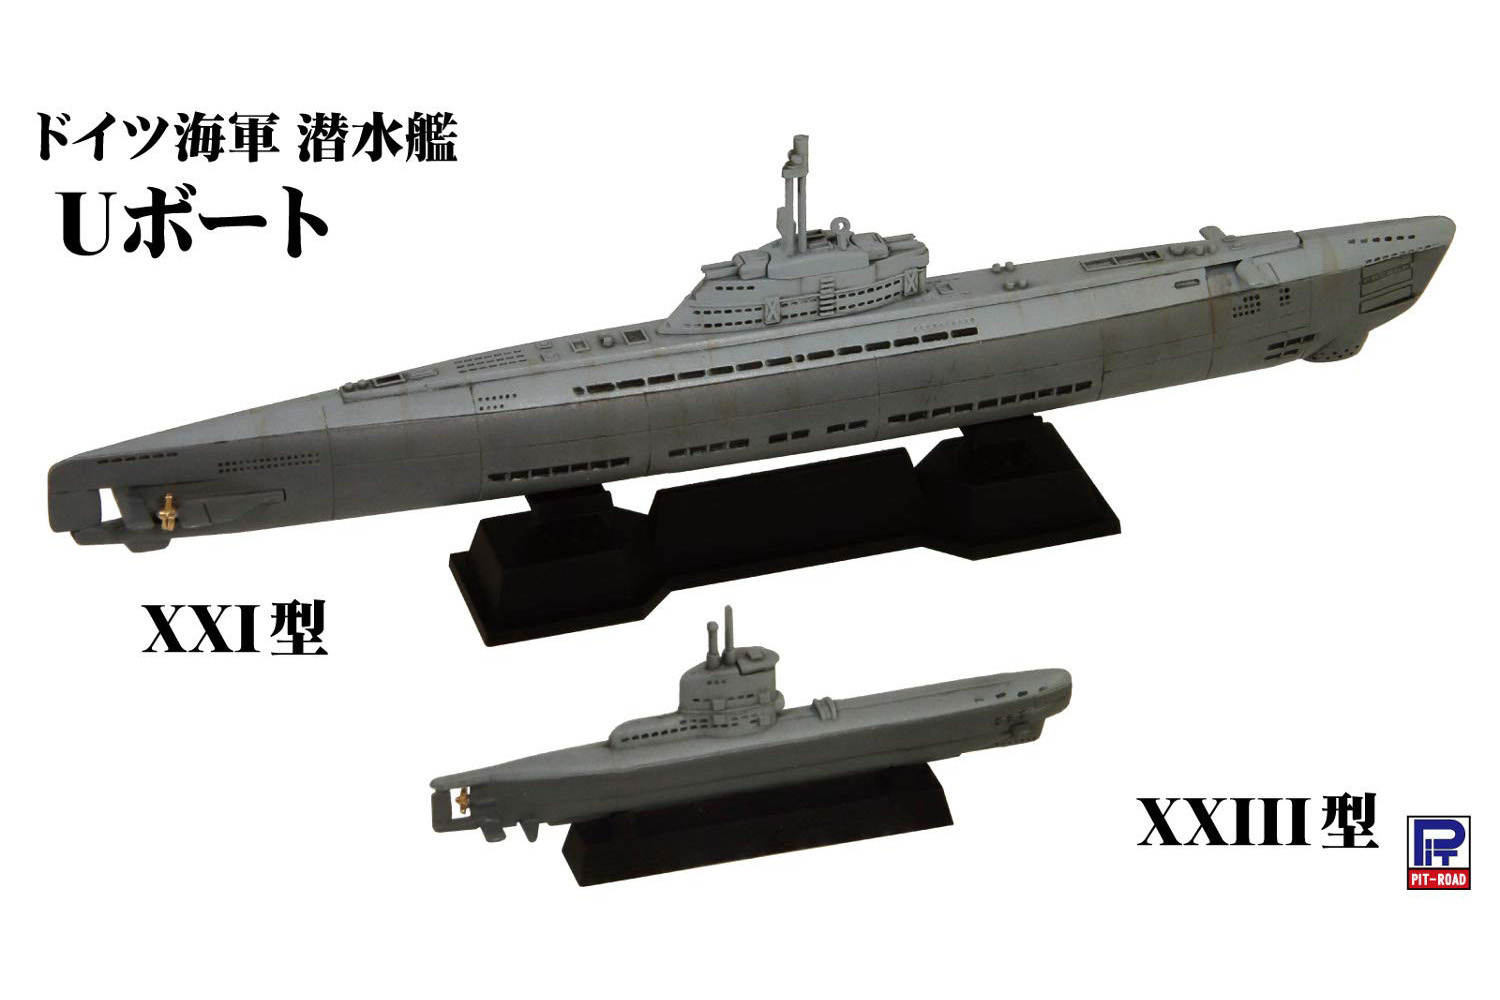 スカイウェーブシリーズ『ドイツ海軍 潜水艦 Uボート XXI型＆XXIII型』1/700 プラモデル-003